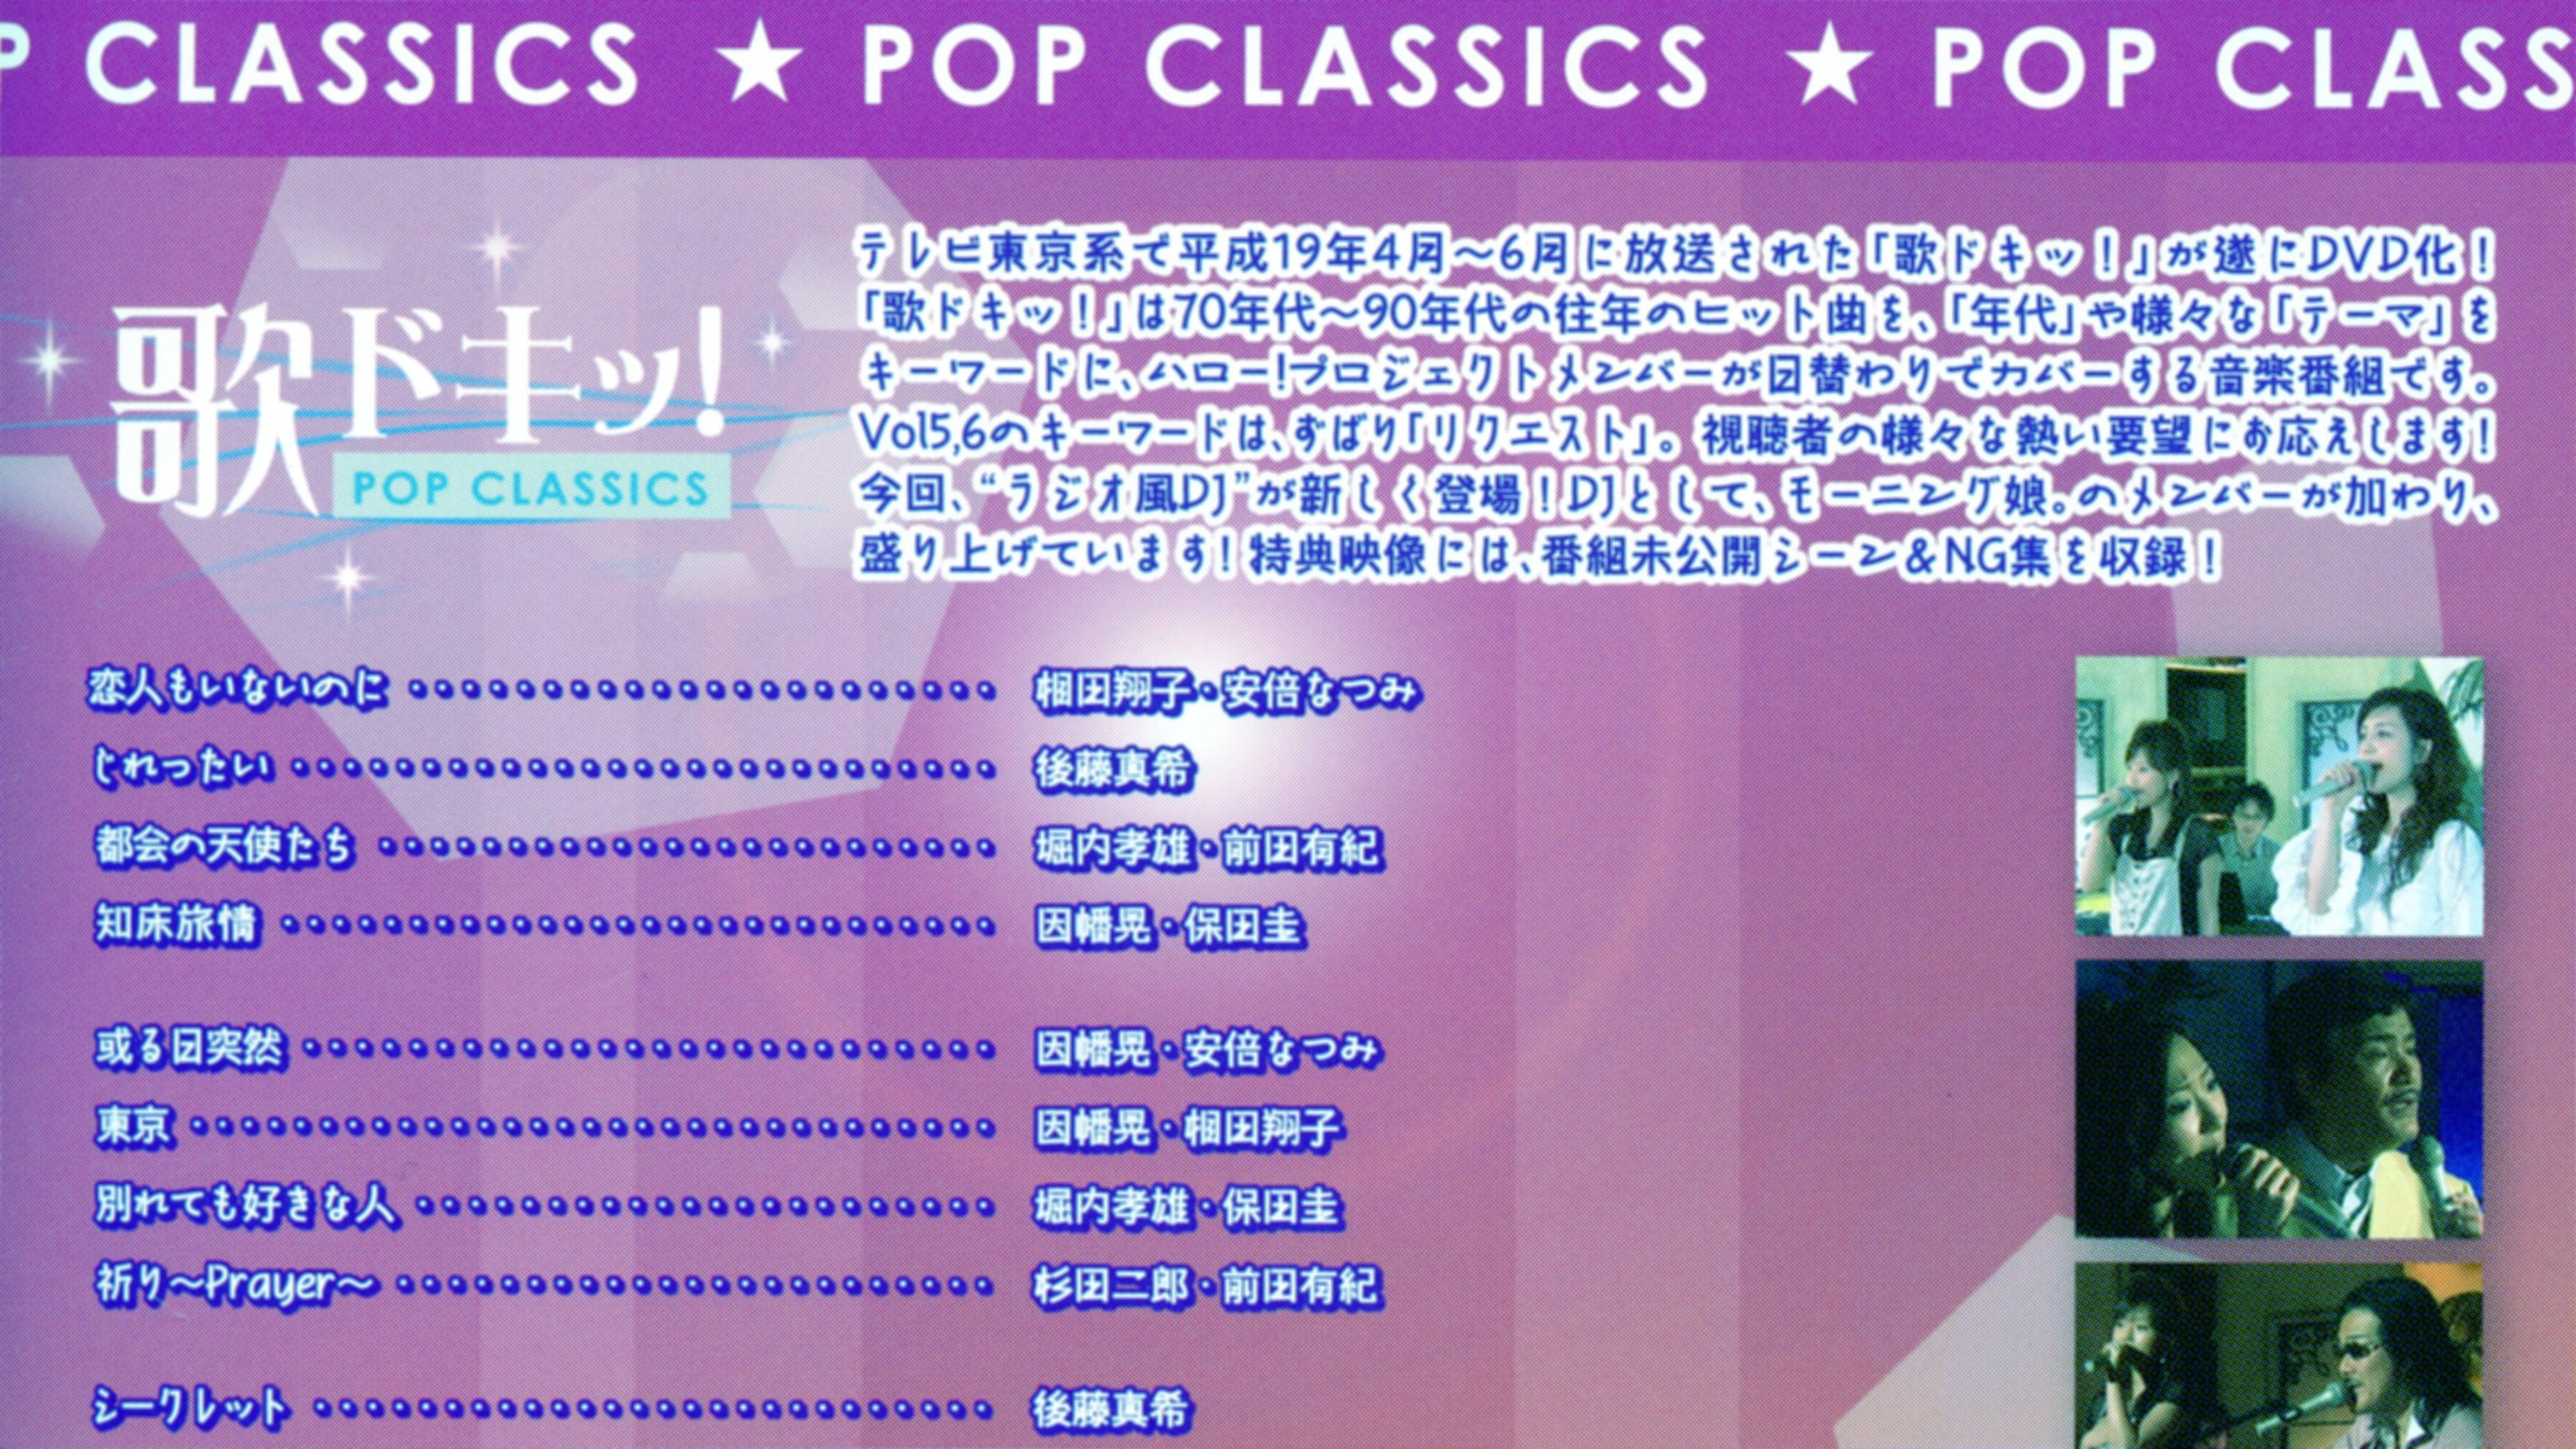 Uta Doki! Pop Classics Vol.5 backdrop